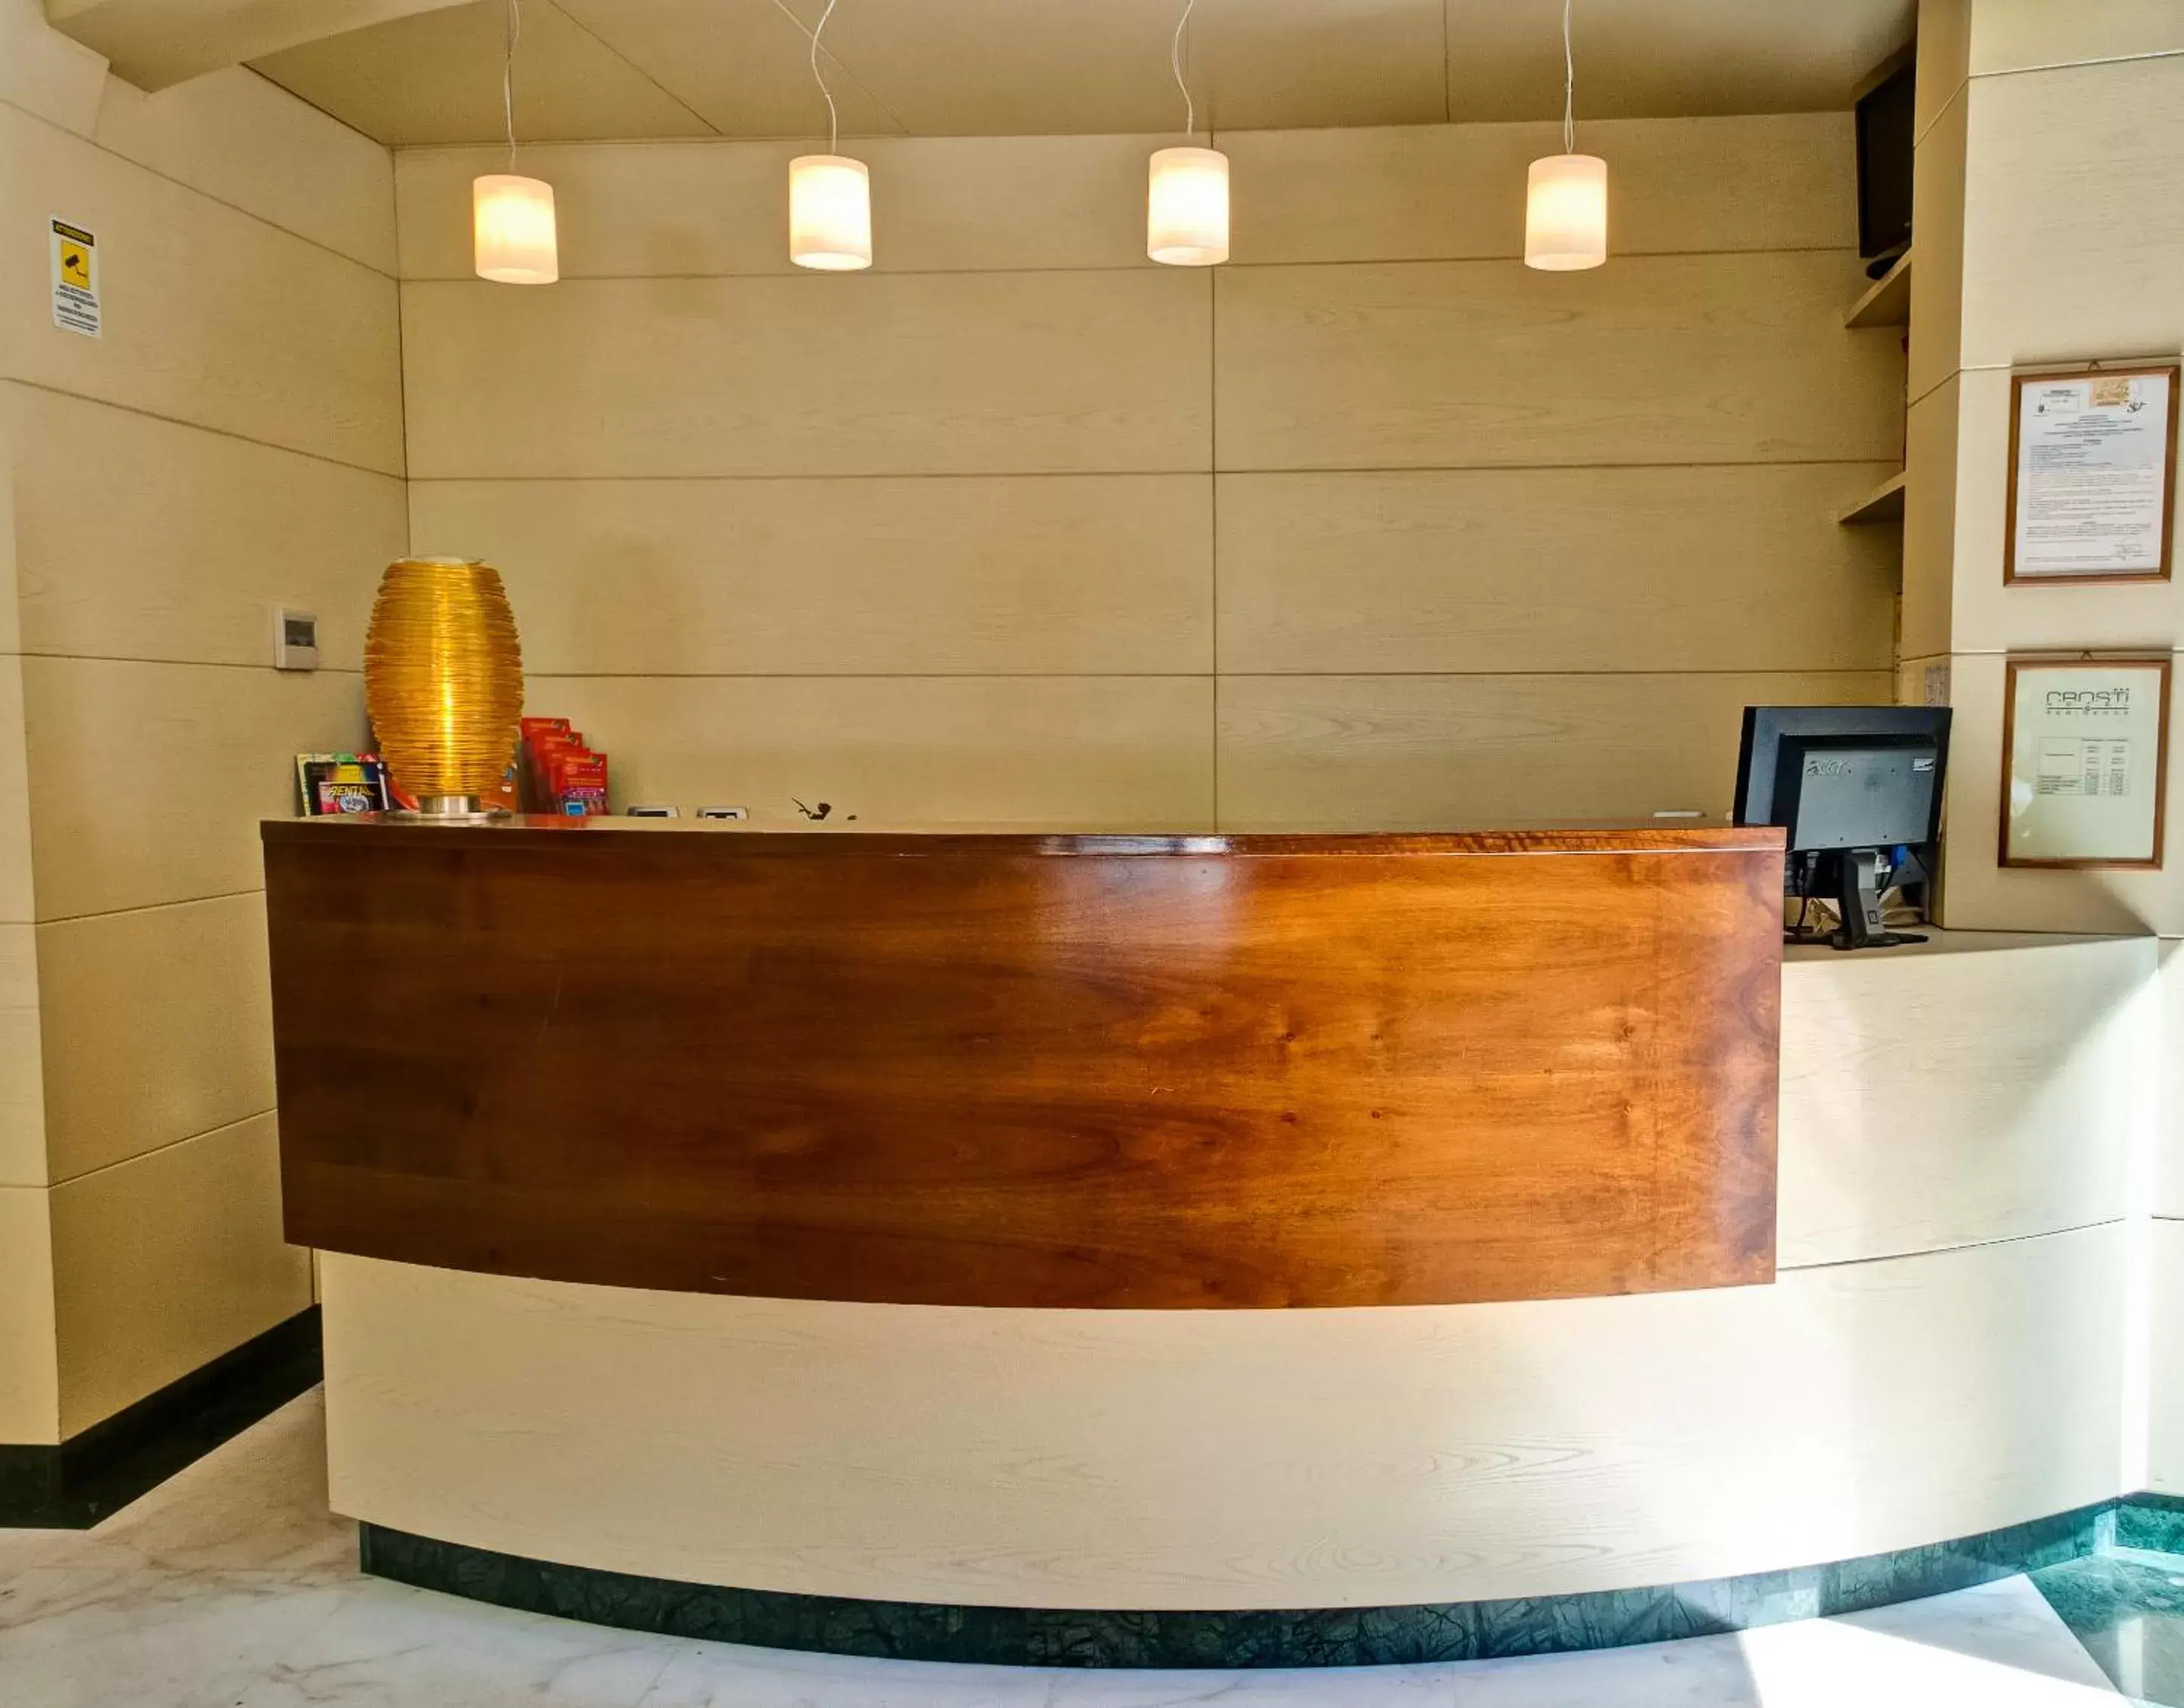 Lobby or reception, Lobby/Reception in Crosti Hotel